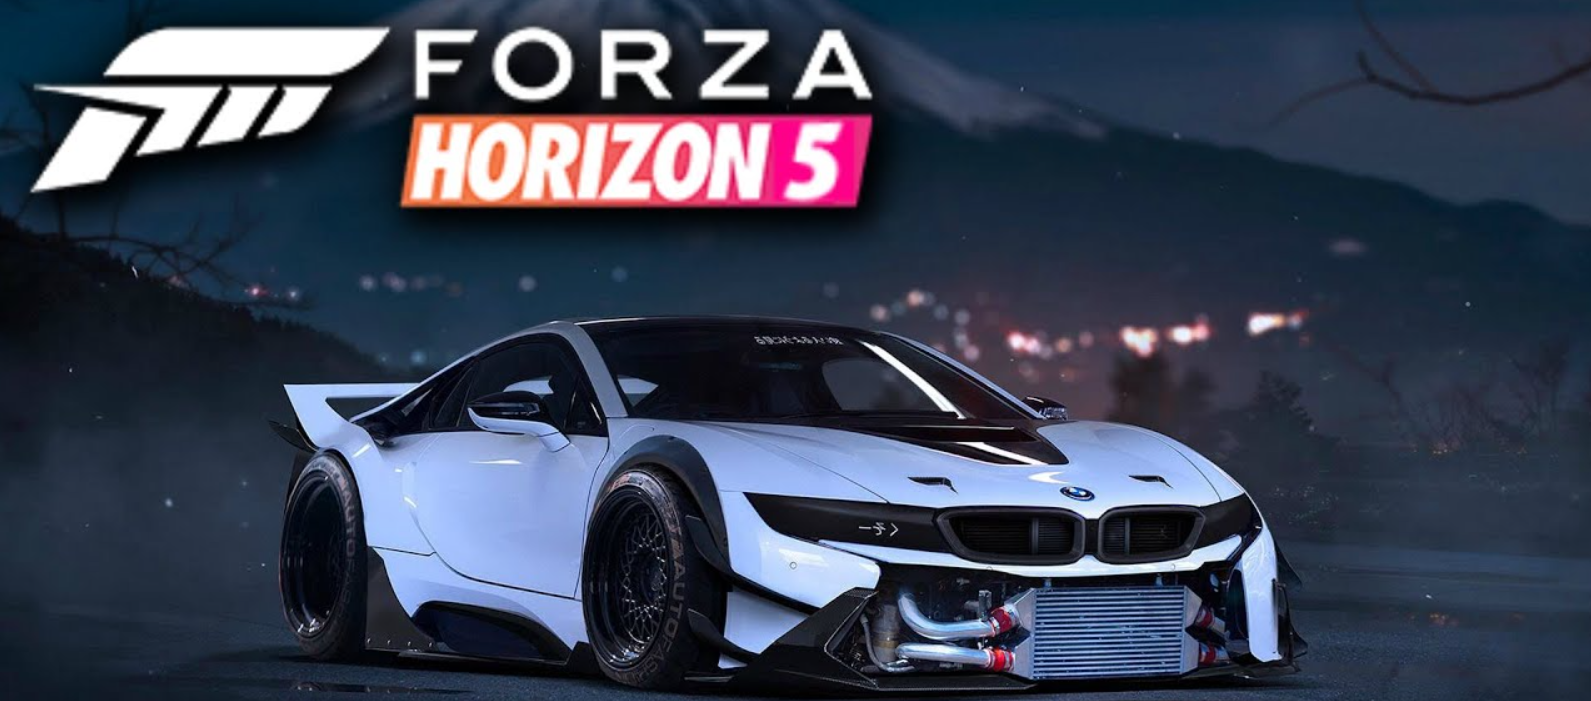 Forza horizon 5 update. Forza Horizon 5 Постер. Forza Horizon 5 обложка. Forza Horizon 5 Xbox. Forza Horizon 5 Premium.